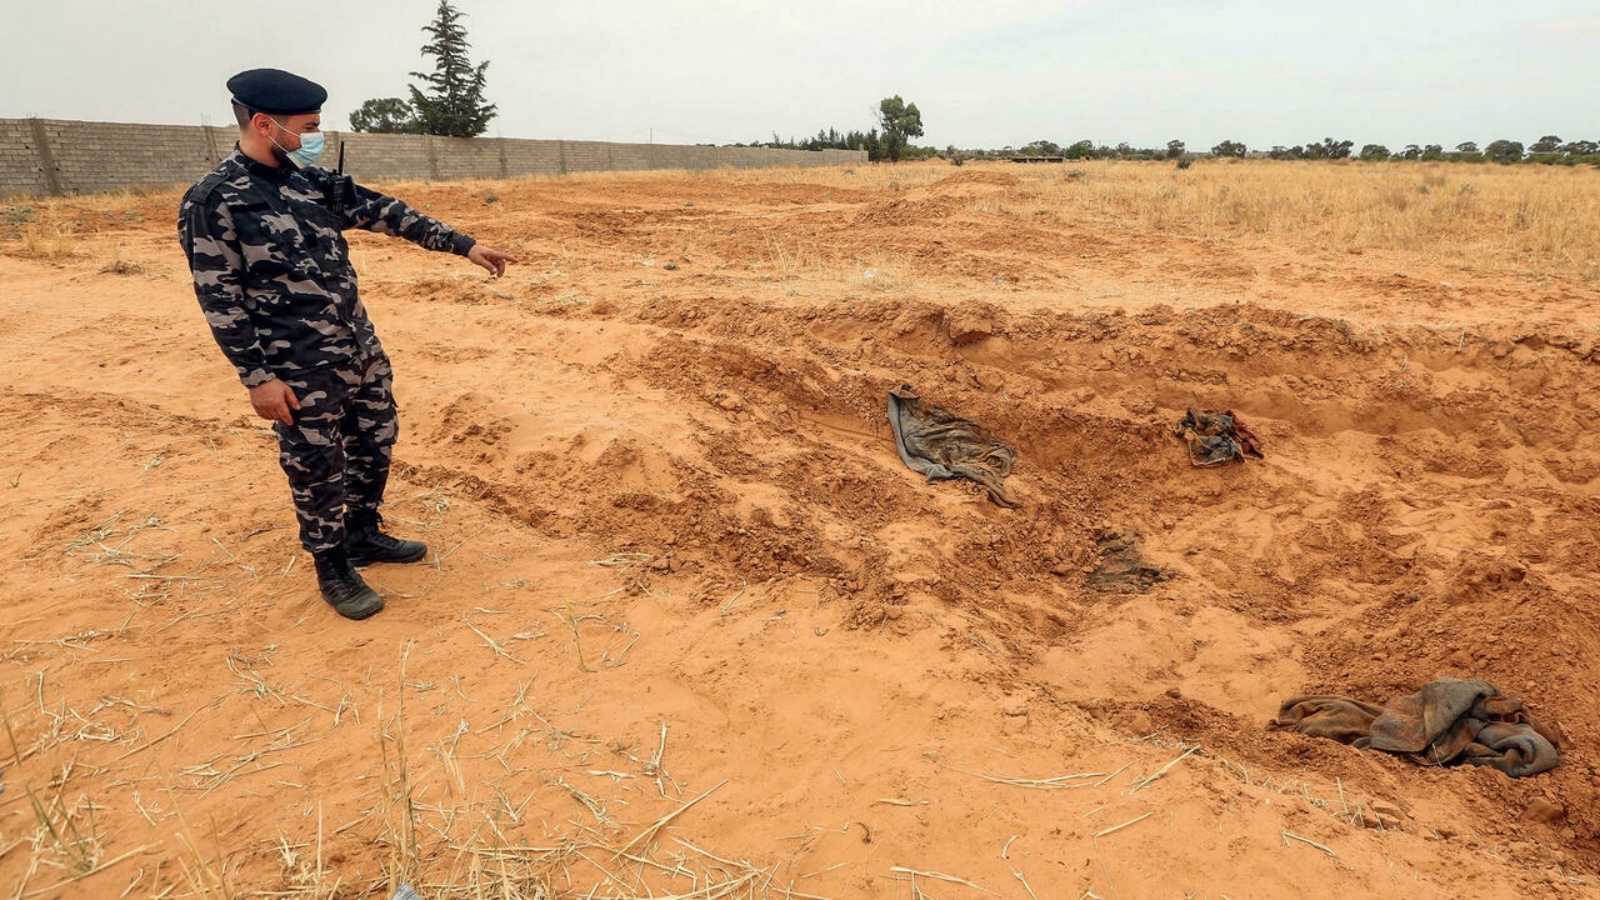 أحد عناصر القوات الأمنية التابعة لوزارة الداخلية في حكومة الوفاق يتفقد موقع مقبرة جماعية في بلدة ترهونة، جنوب شرق العاصمة طرابلس، ليبيا. حزيران / يونيو 2020.